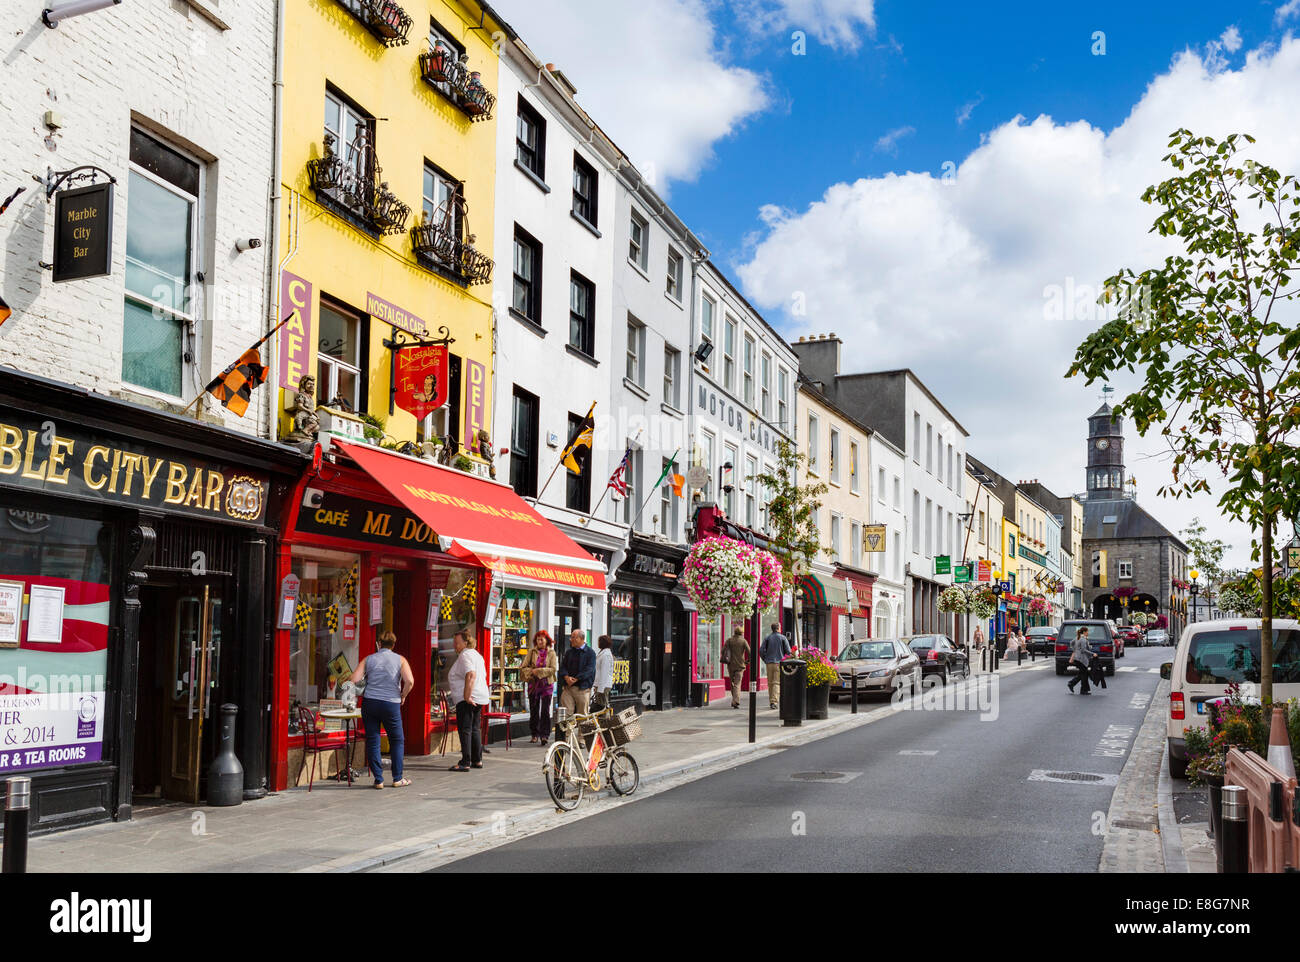 Tiendas de High Street en el centro de la ciudad, la ciudad de Kilkenny, condado de Kilkenny, República de Irlanda Foto de stock